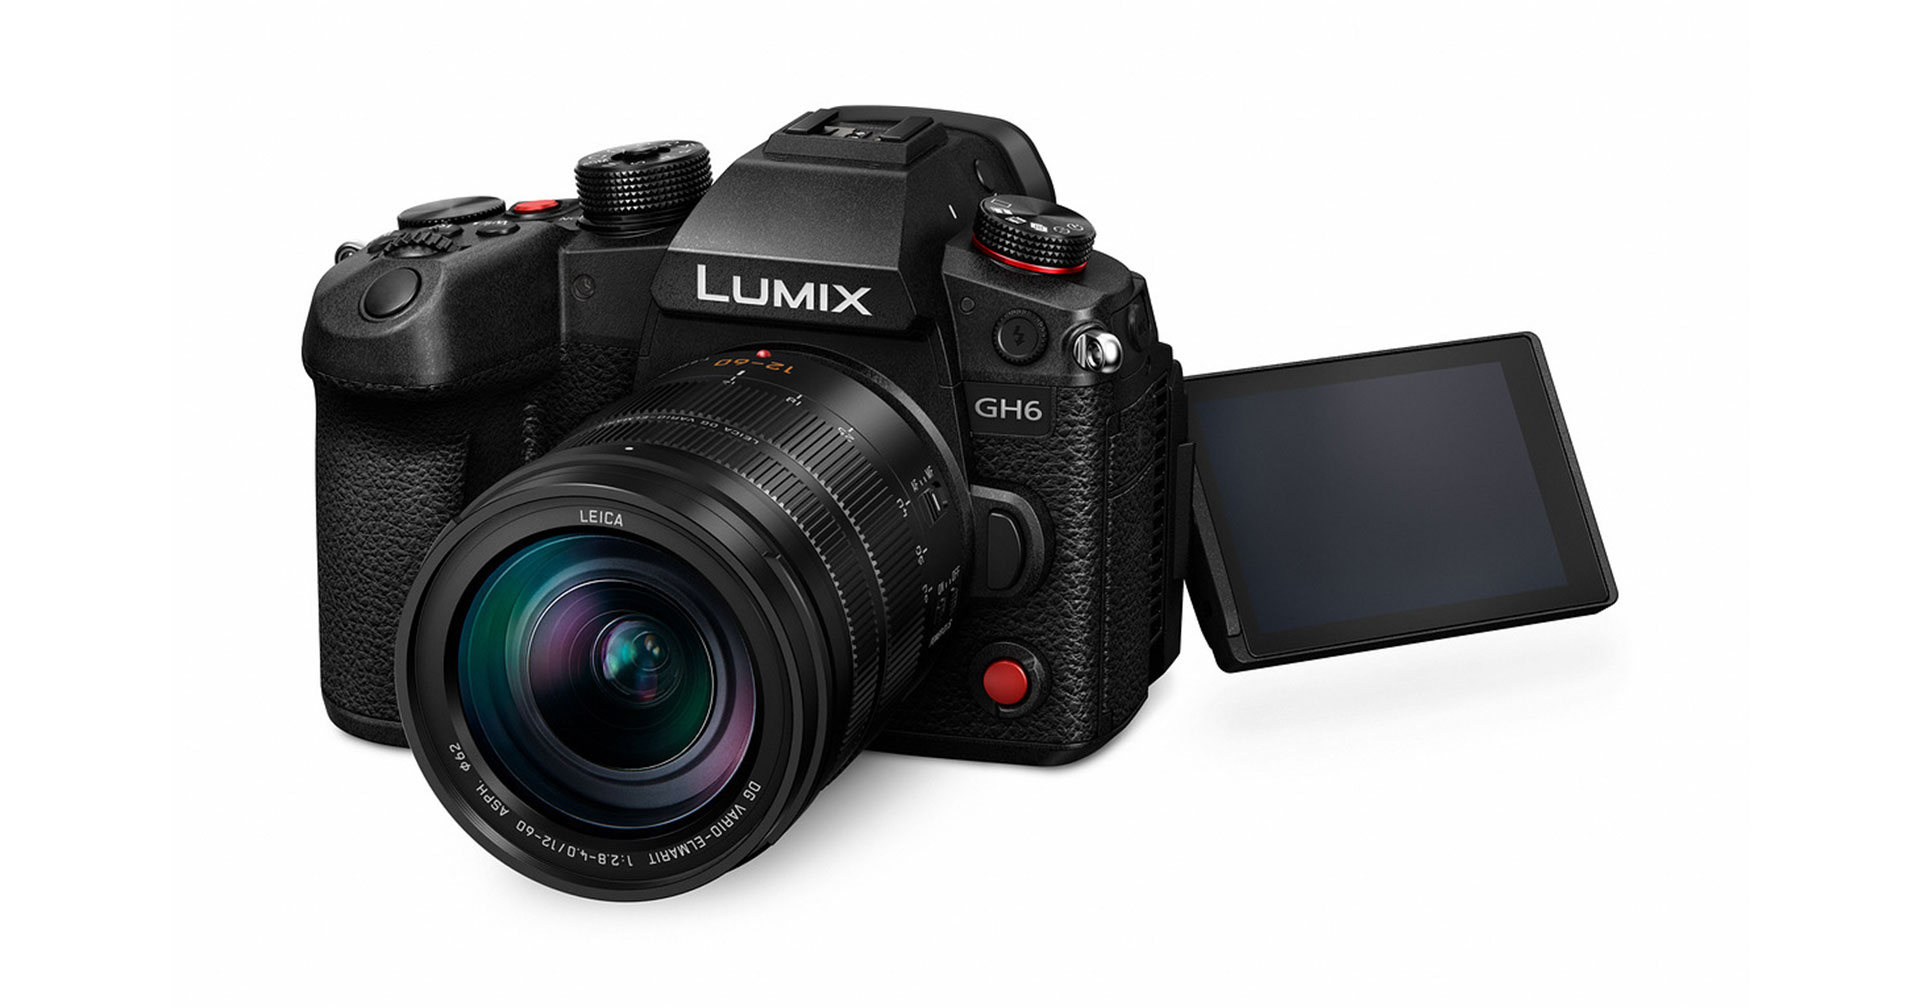 มาแล้วเฟิร์มแวร์ใหม่ Panasonic Lumix GH6 เพิ่มฟีเจอร์ 4K 120p HDMI Output และ BRAW Recording